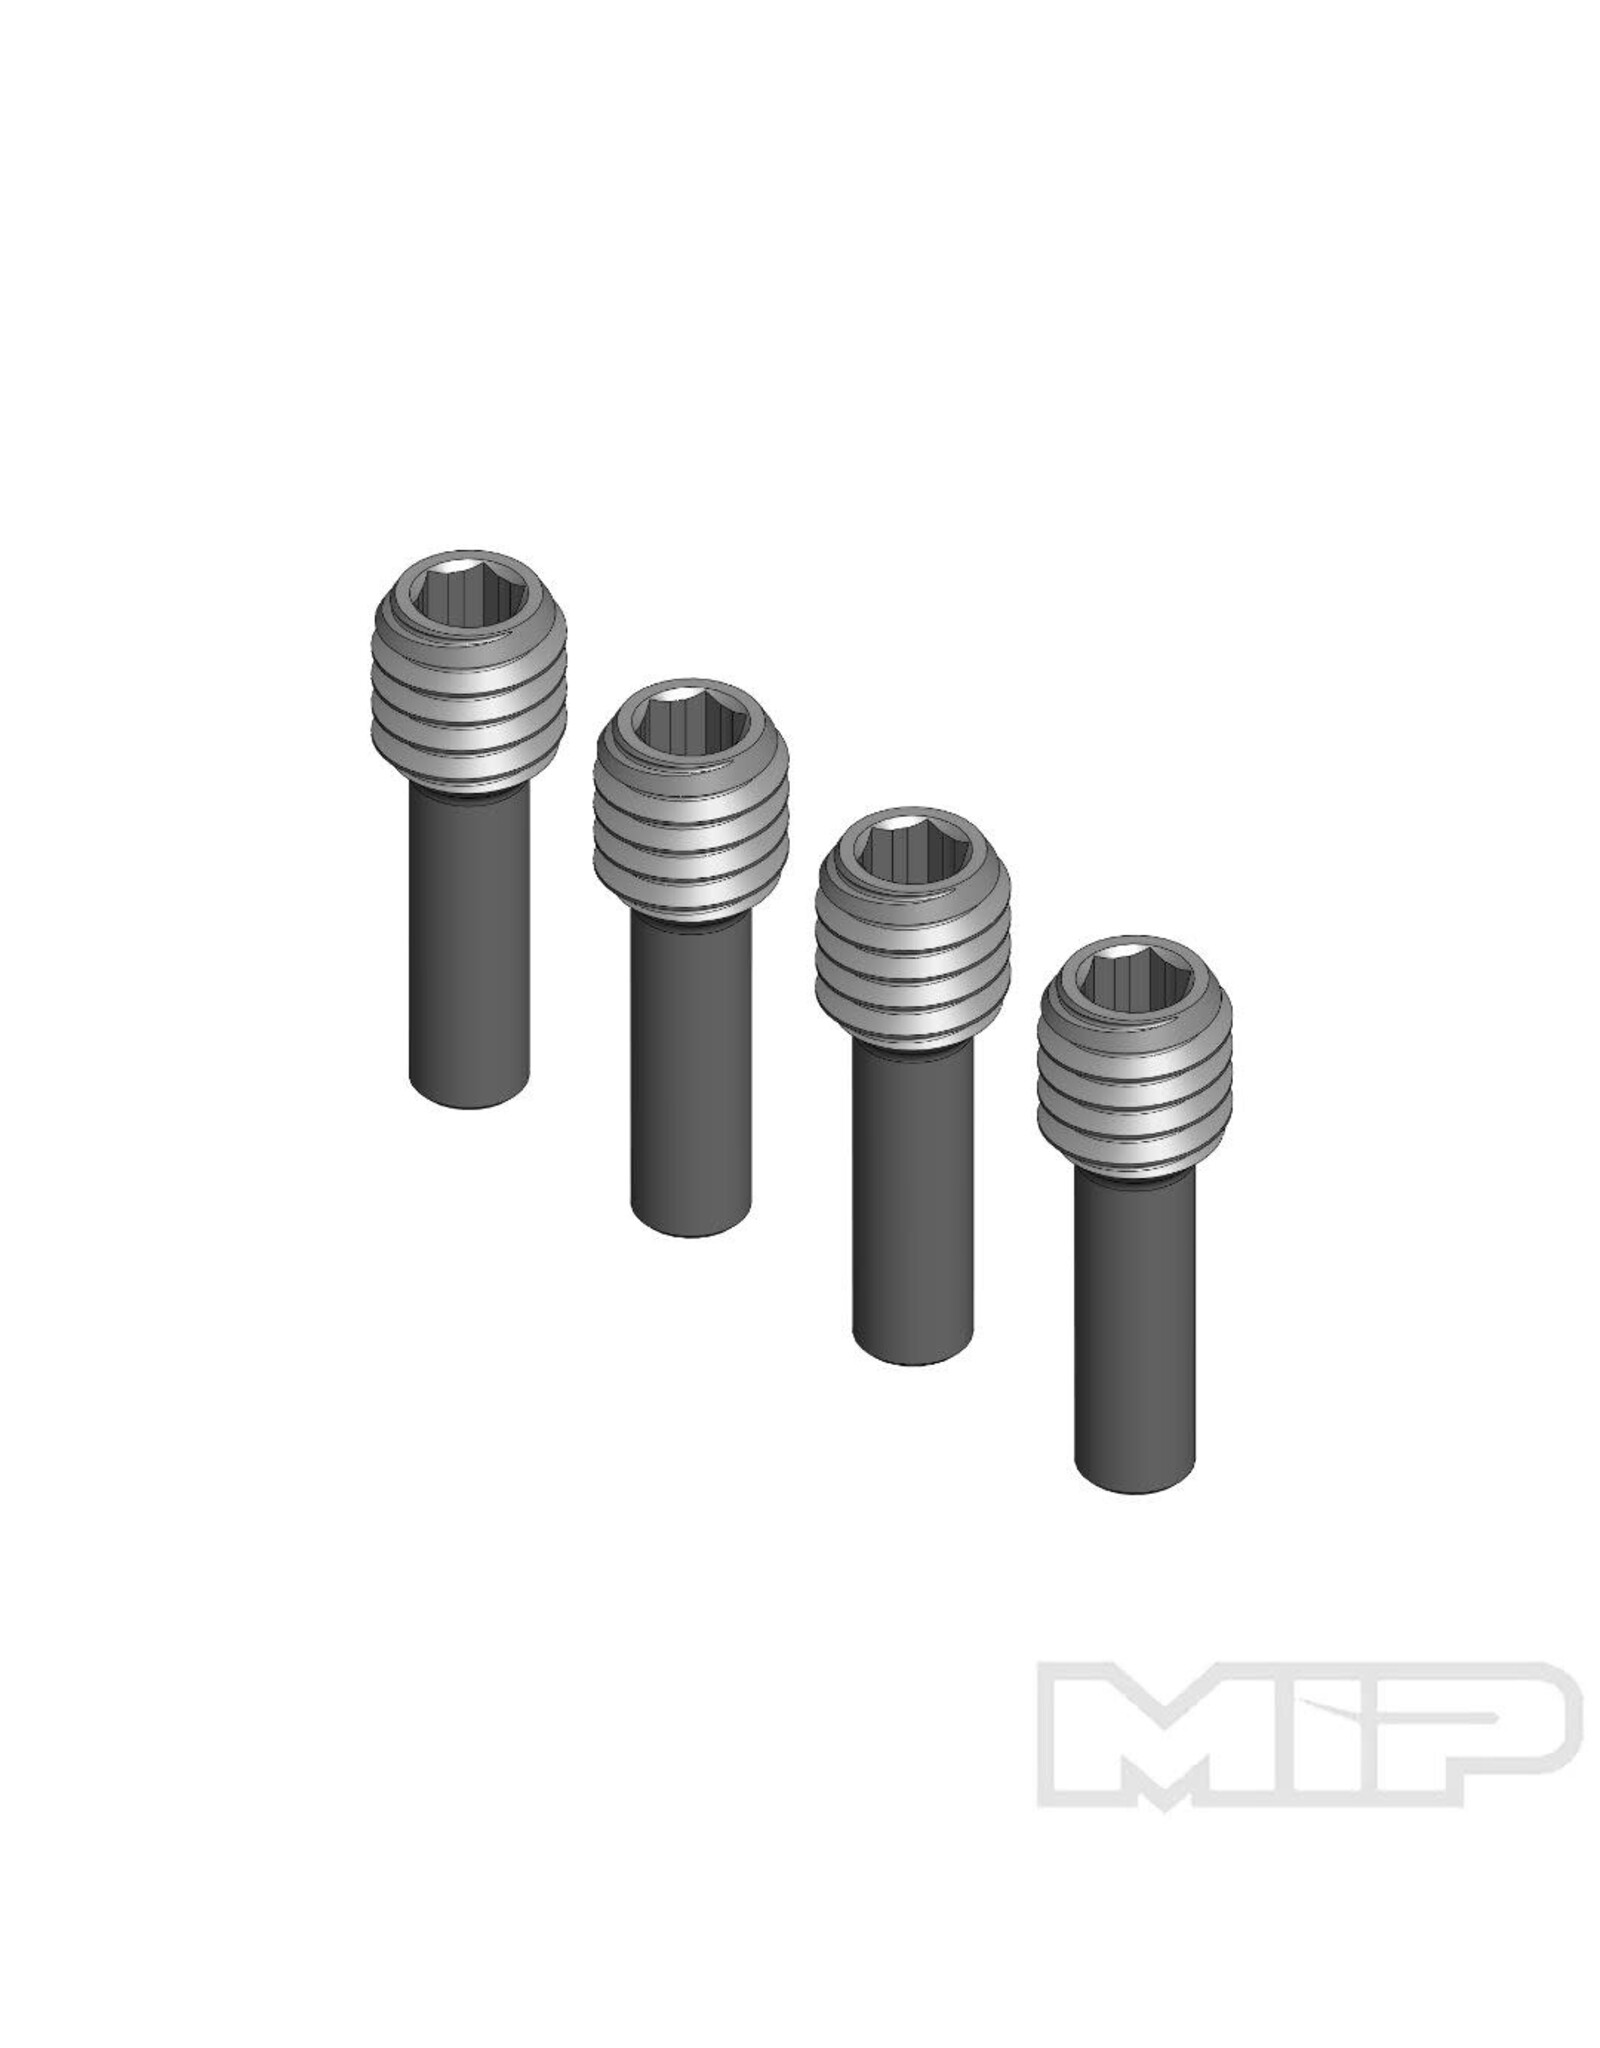 MIP MIP SHSS, M4 x 12mm Pin Screw (4)